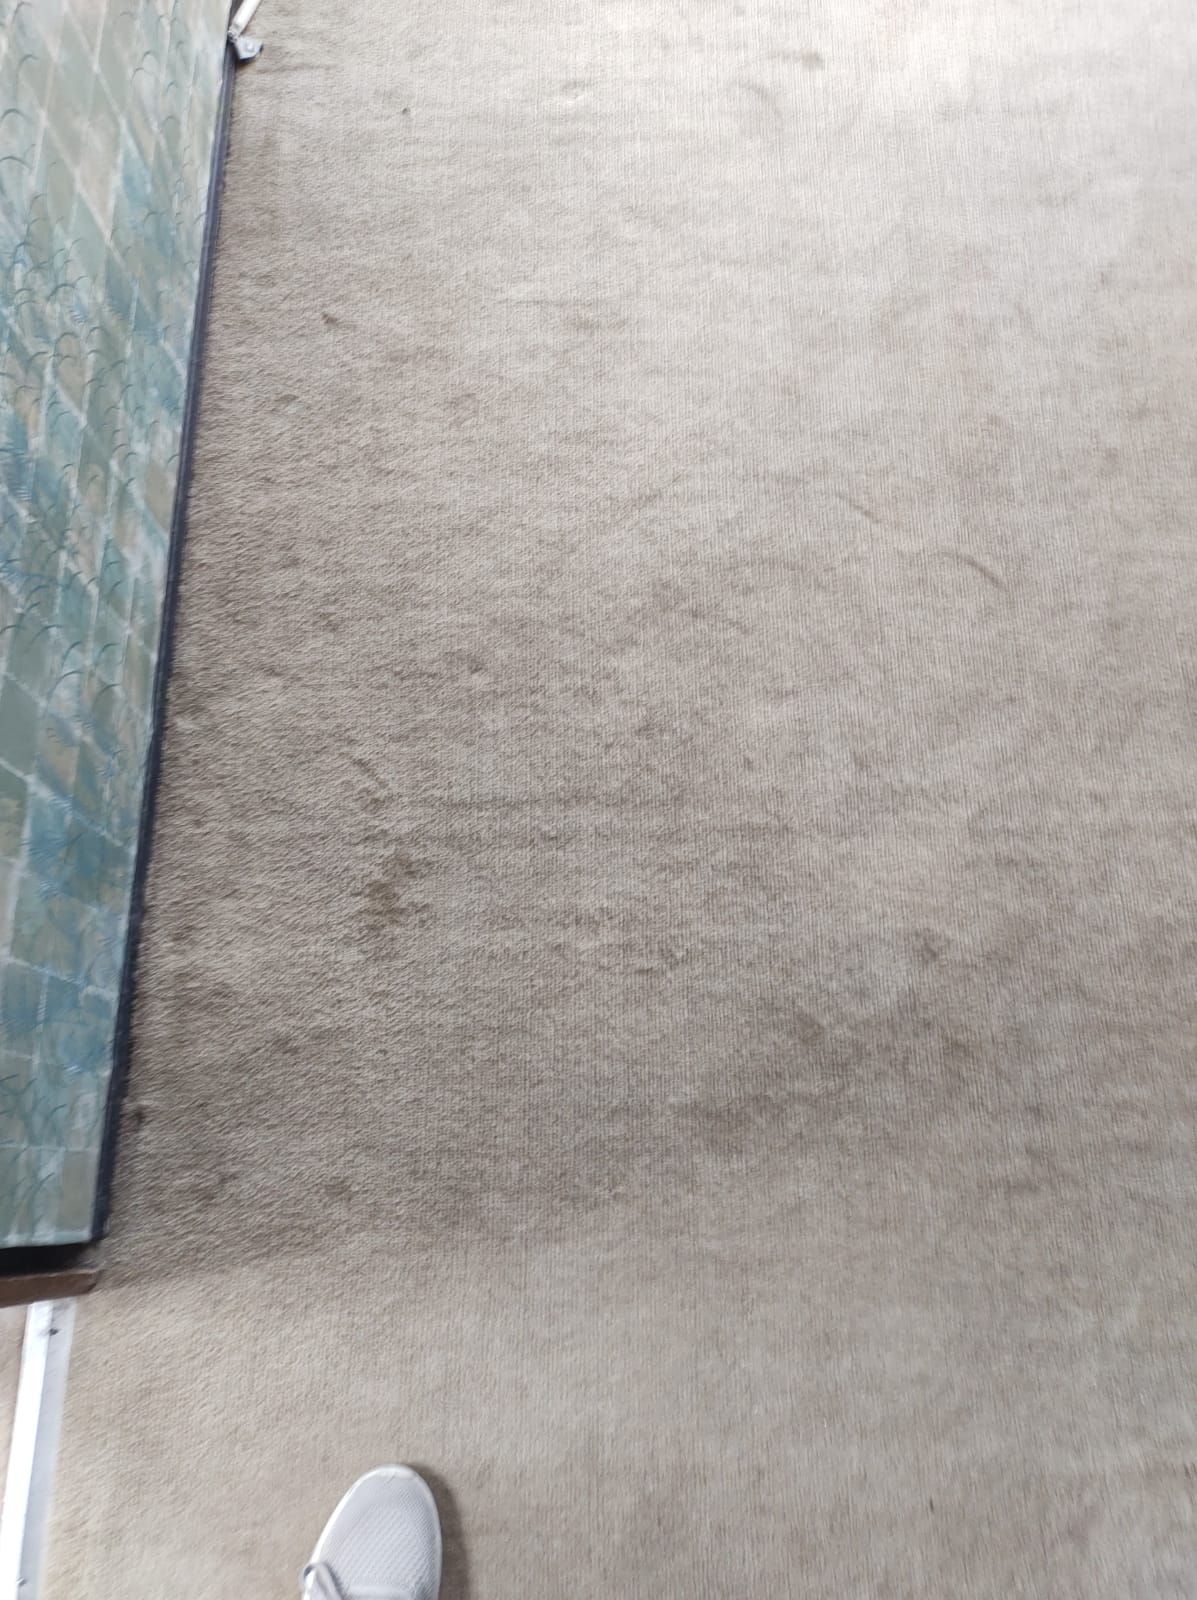 CLEAN DRY LATINO - Lavado de alfombras